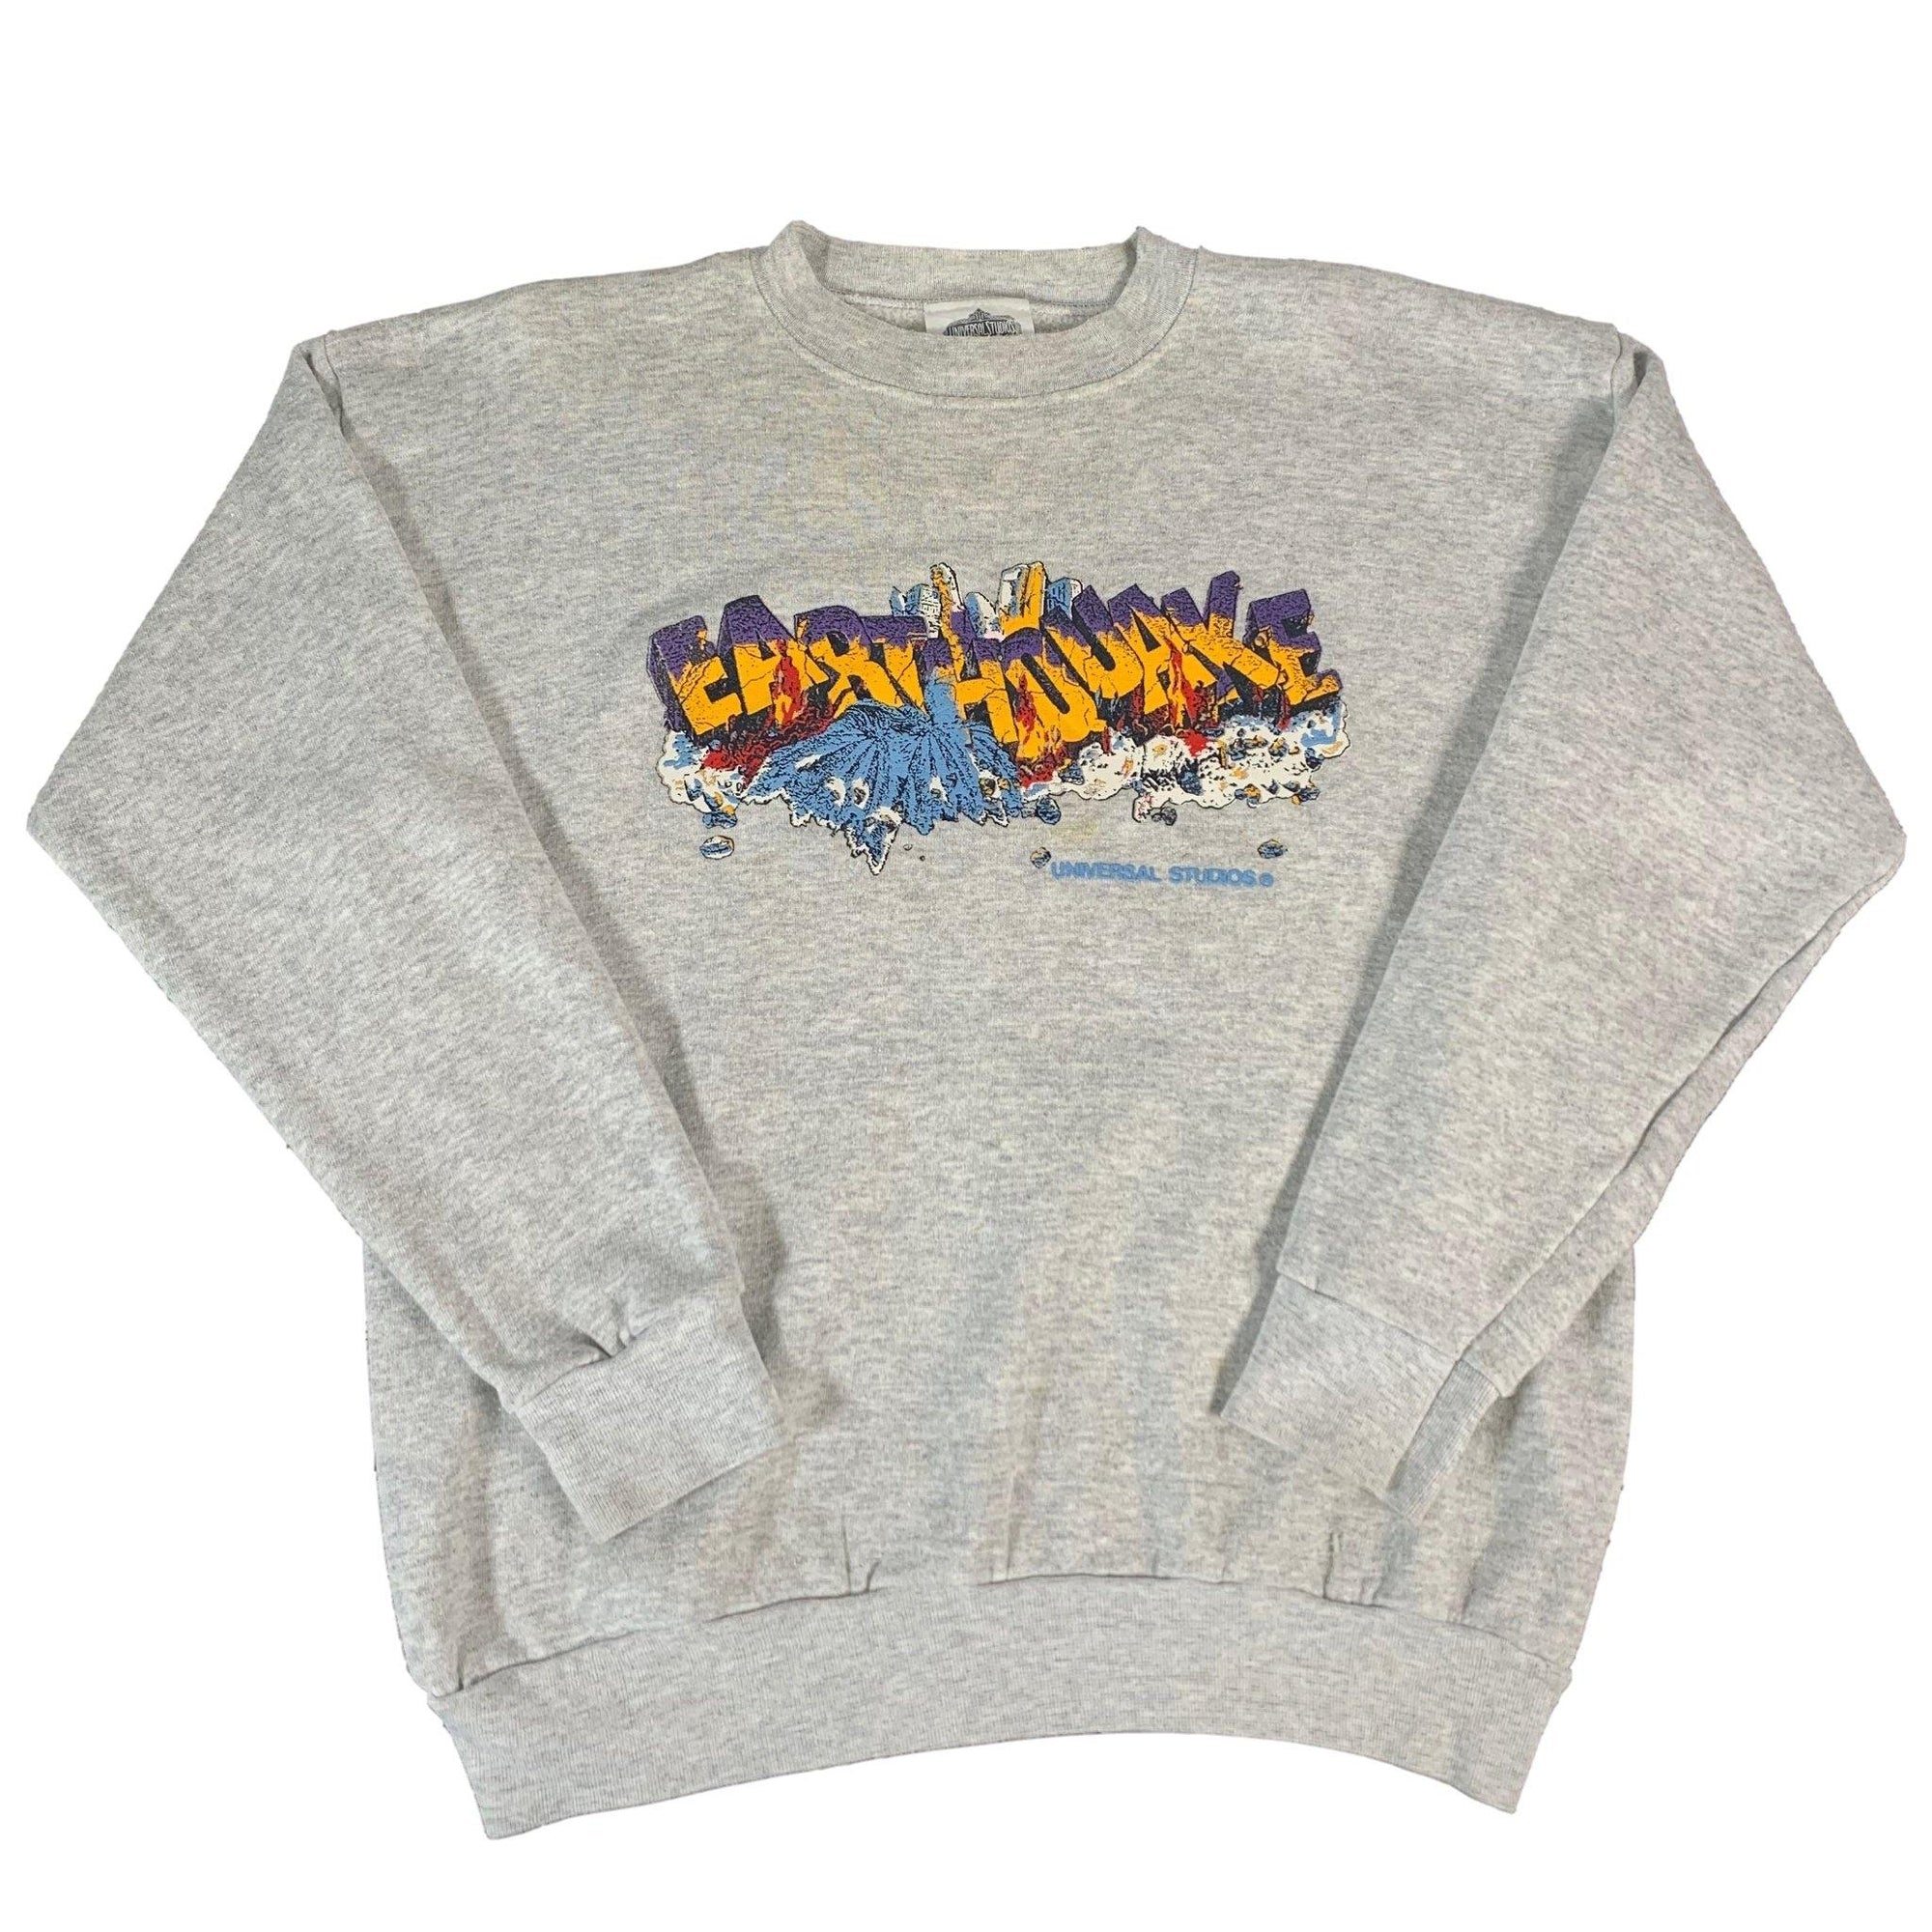 Vintage Universal Studios "Earthquake" Crewneck Sweatshirt - jointcustodydc